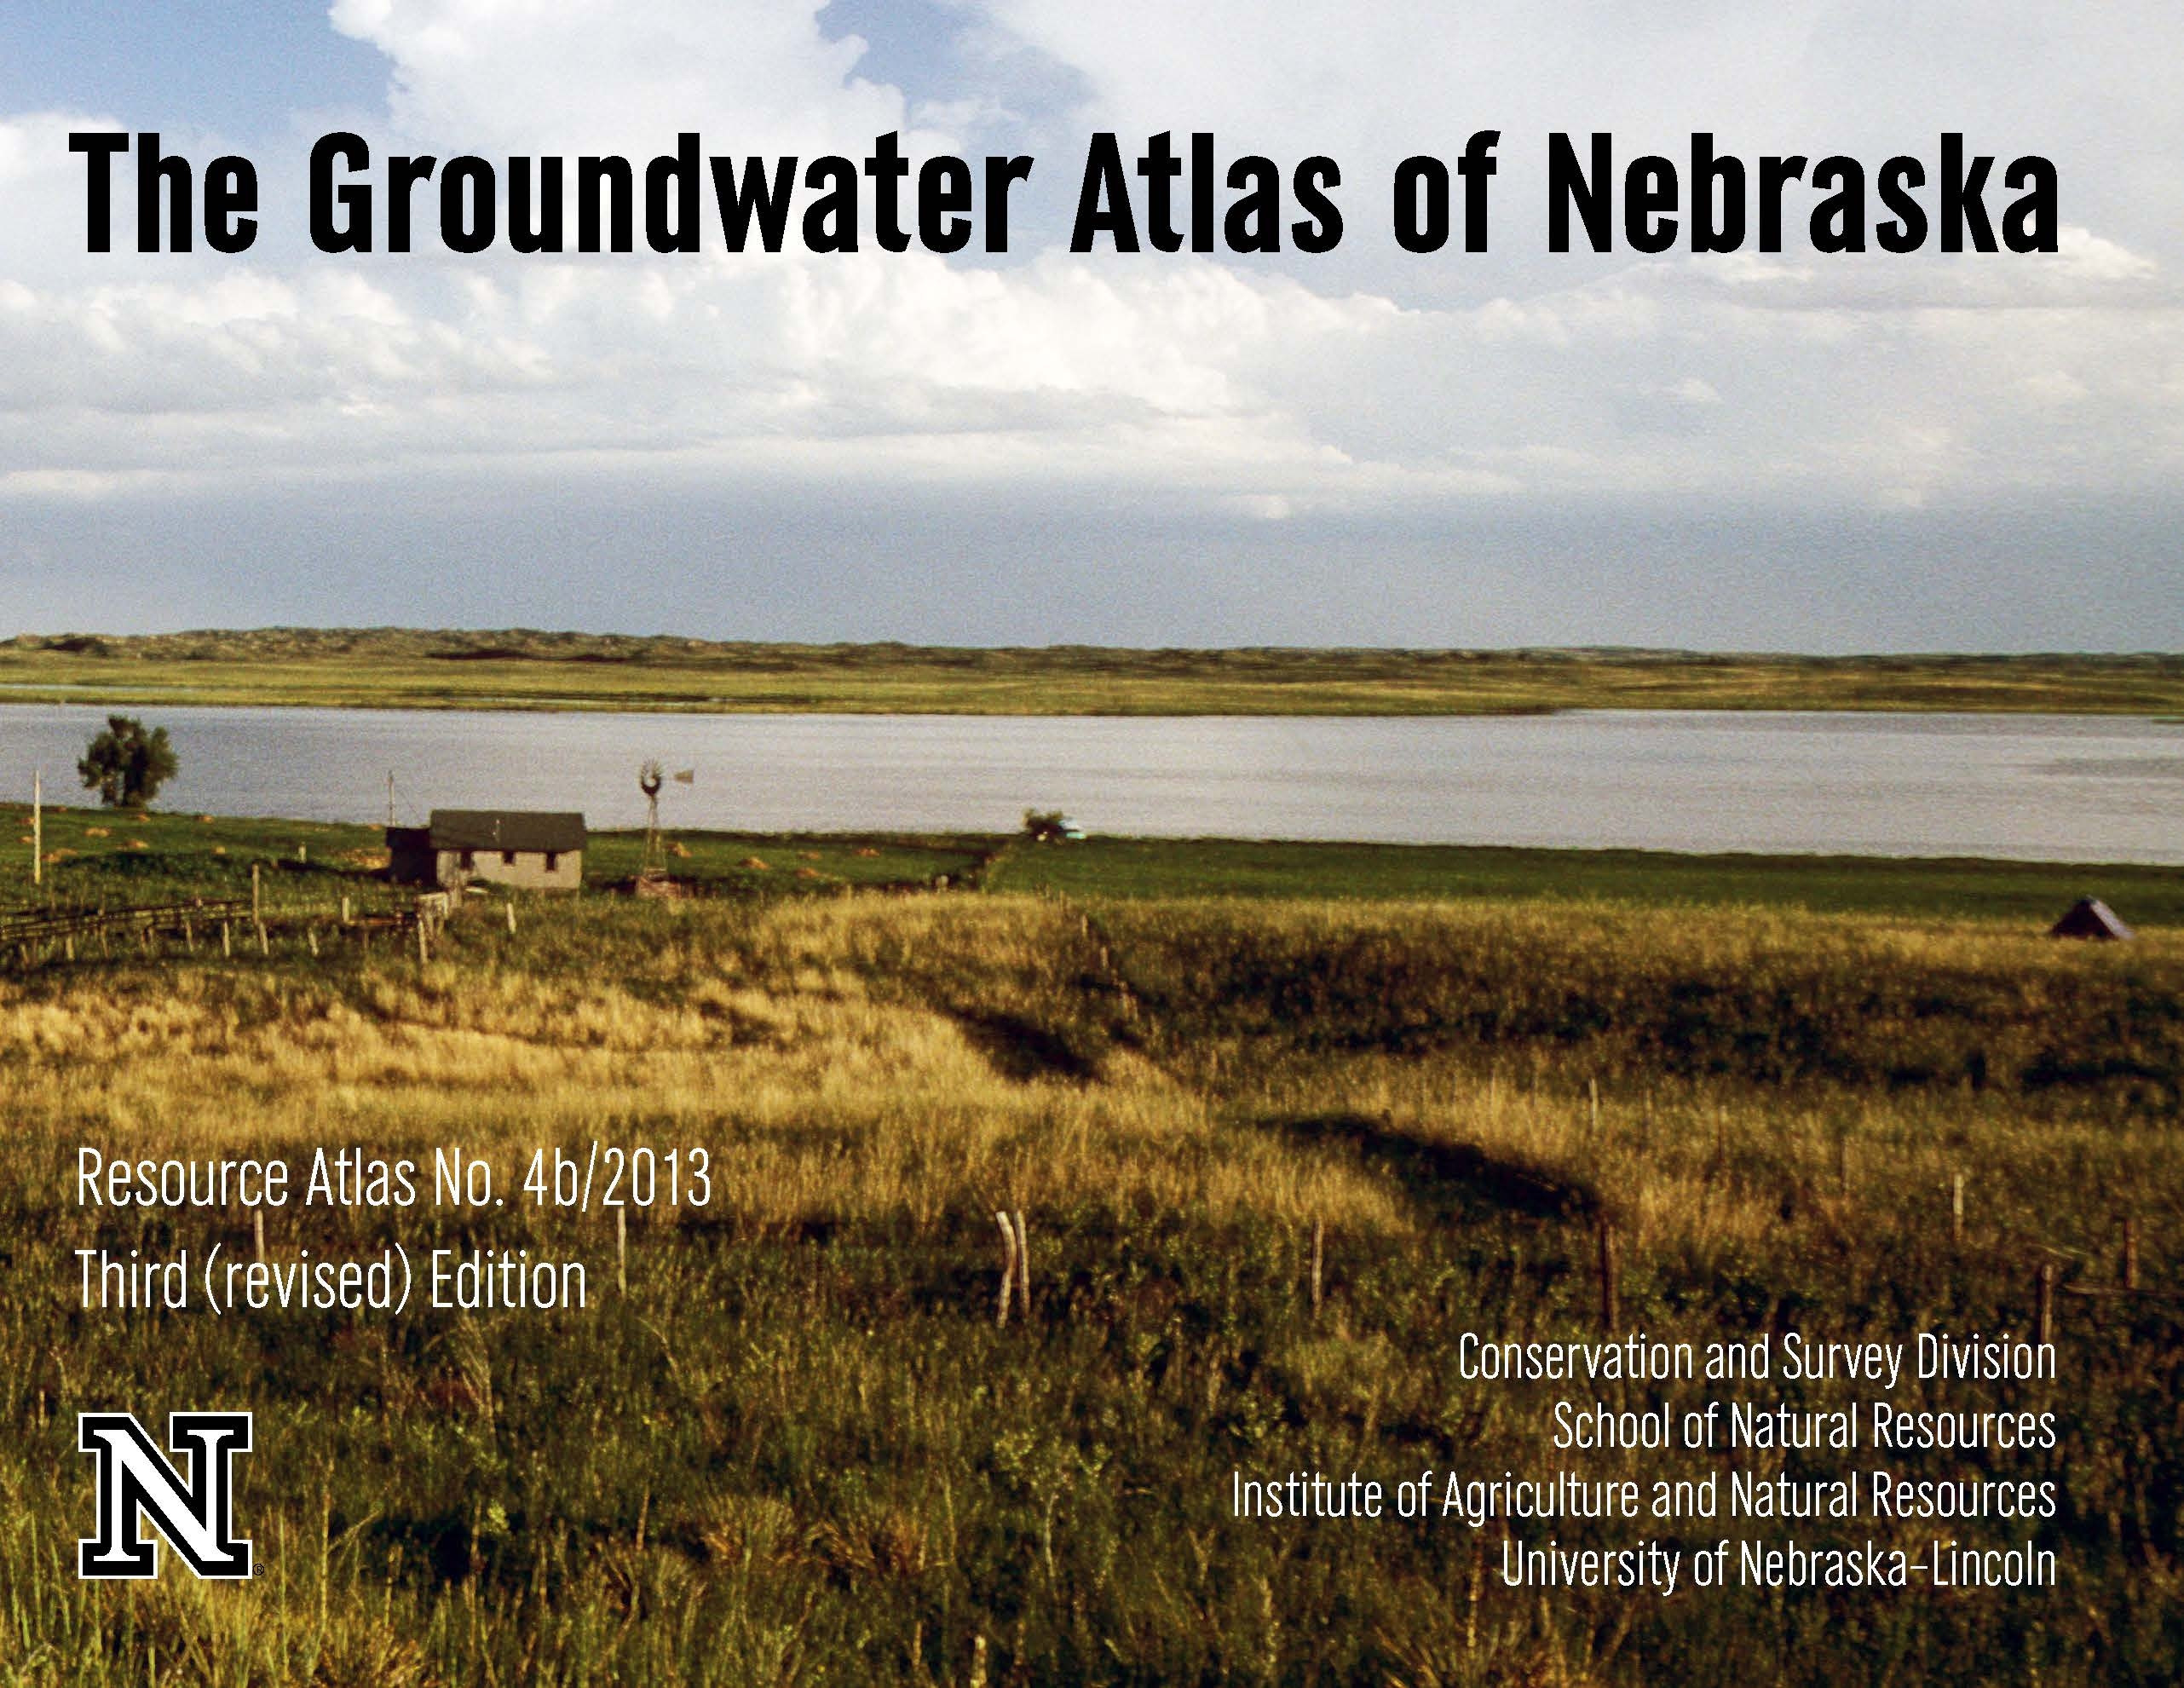 The Groundwater Atlas of Nebraska (RA-4b/2013pdf)